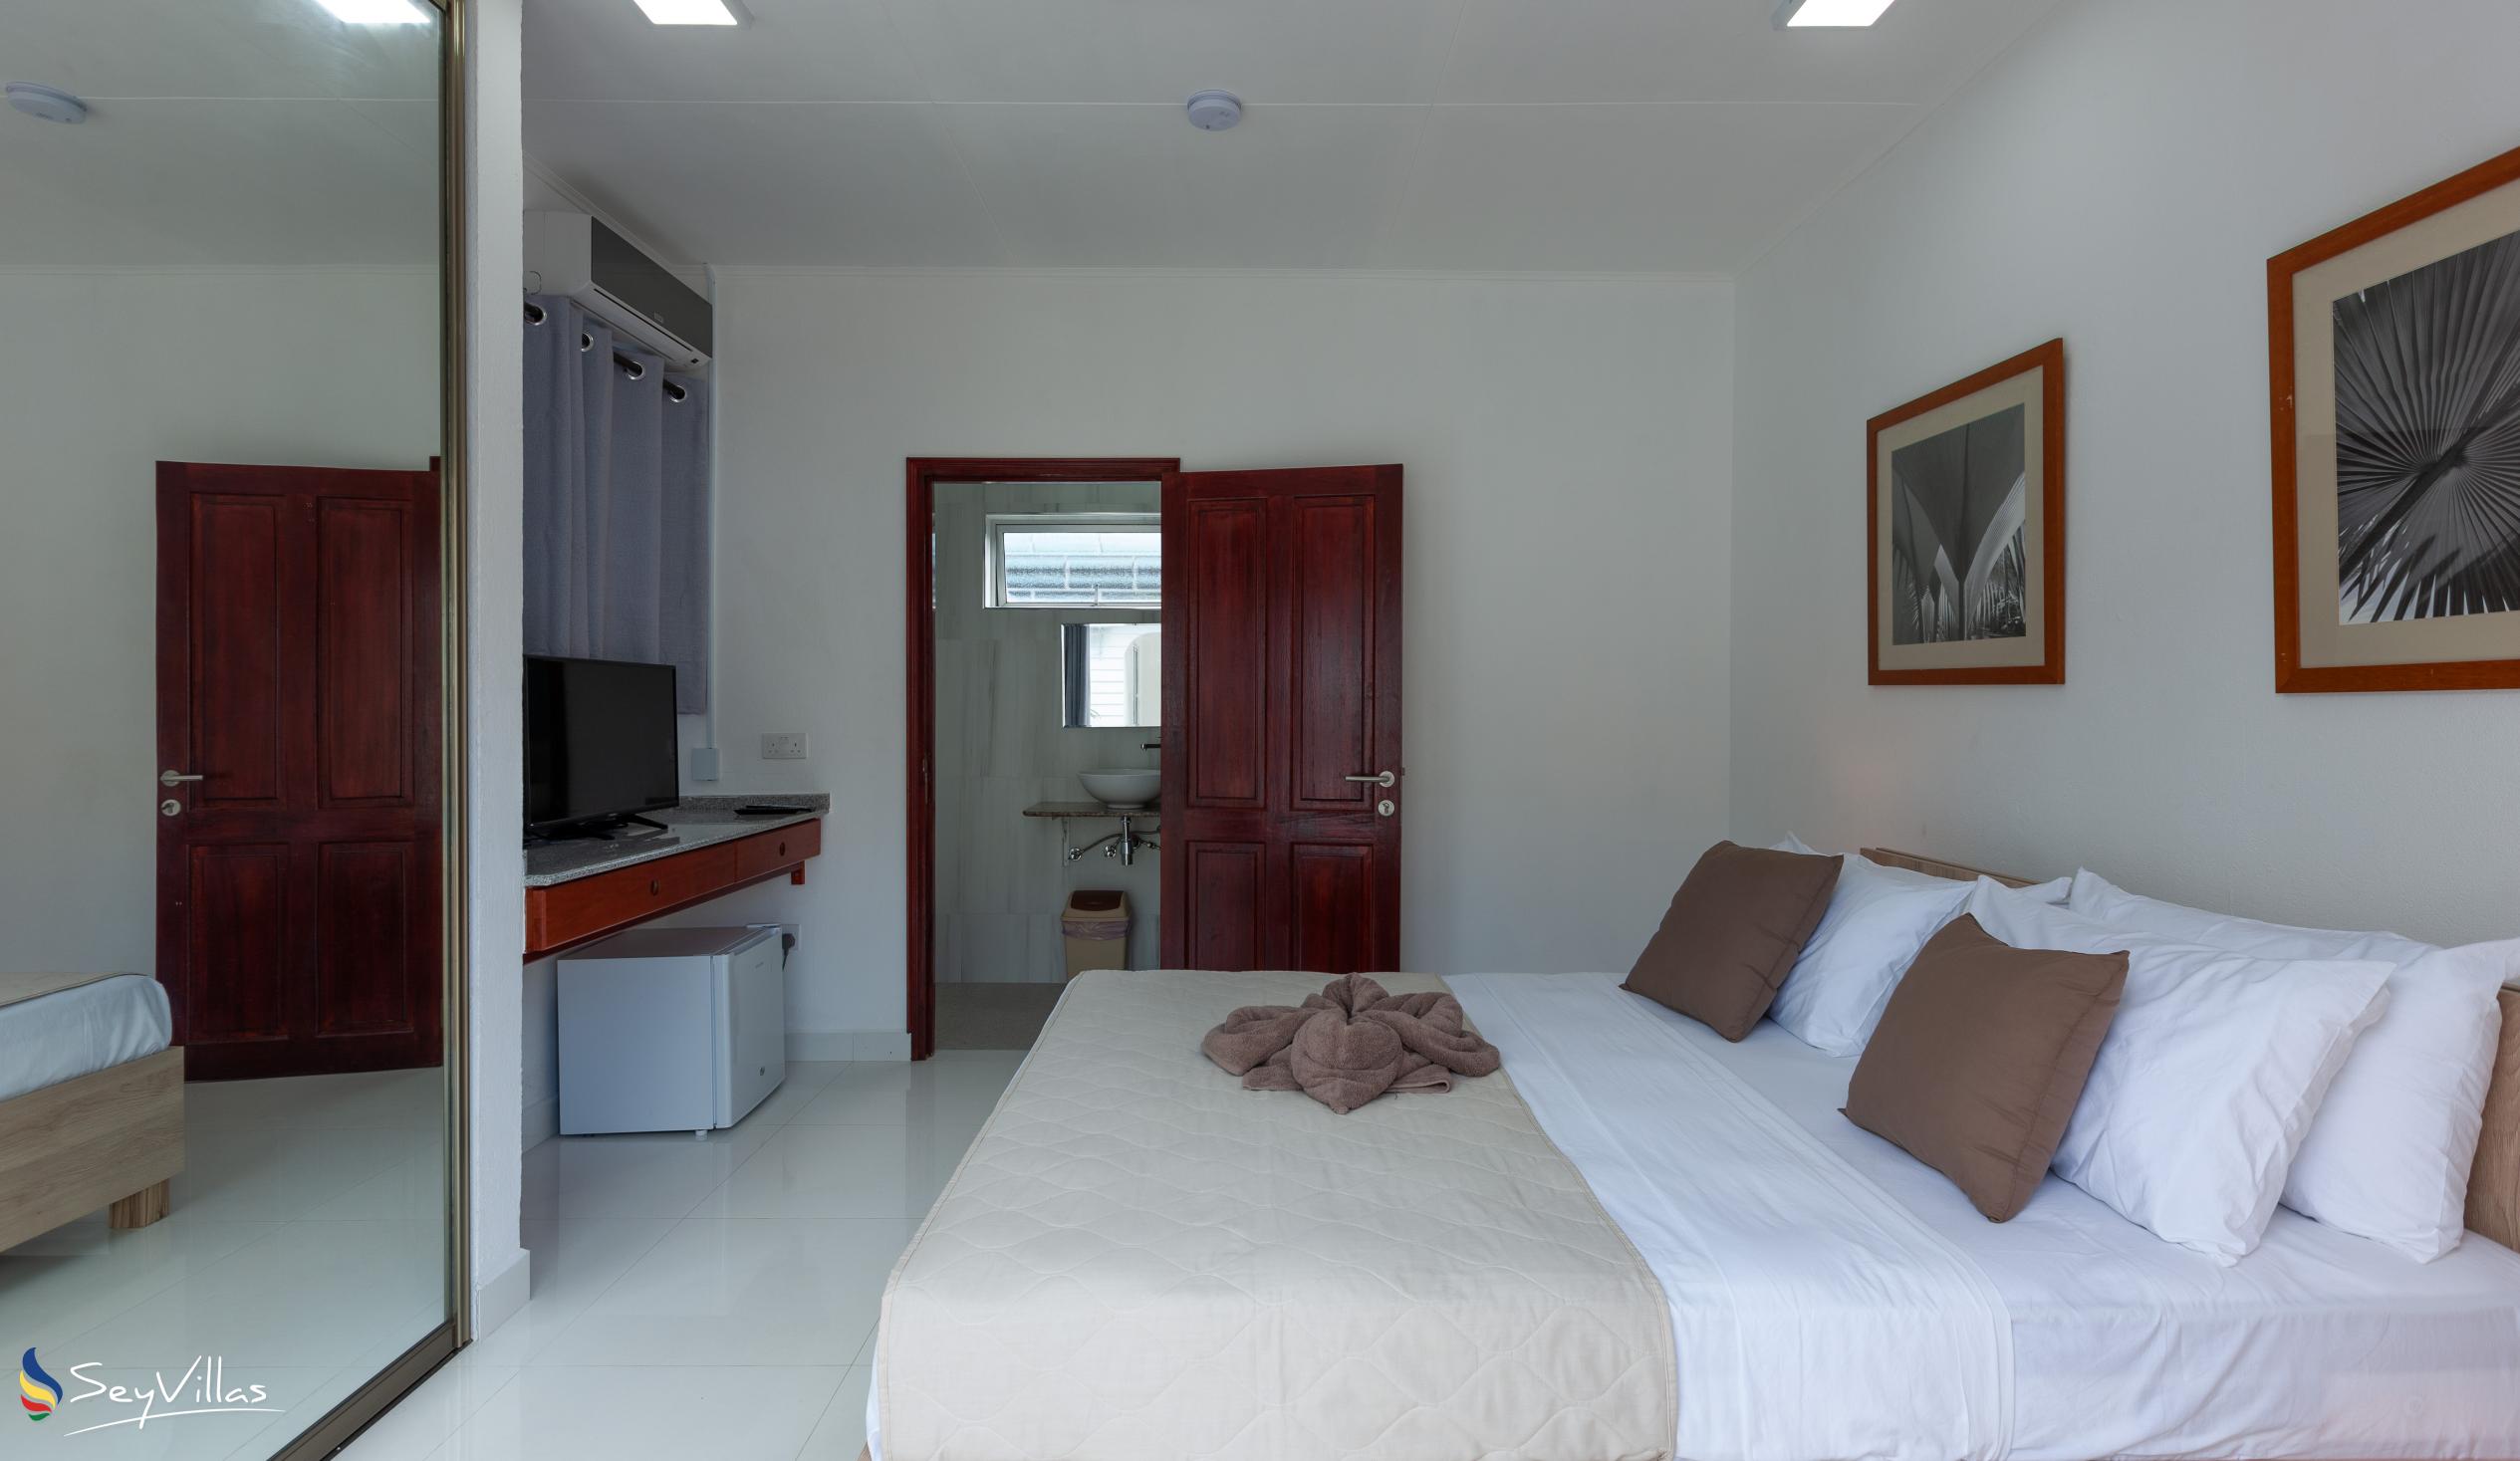 Foto 27: Hotel Plein Soleil - Deluxe Zimmer mit Queensize-Bett - Praslin (Seychellen)